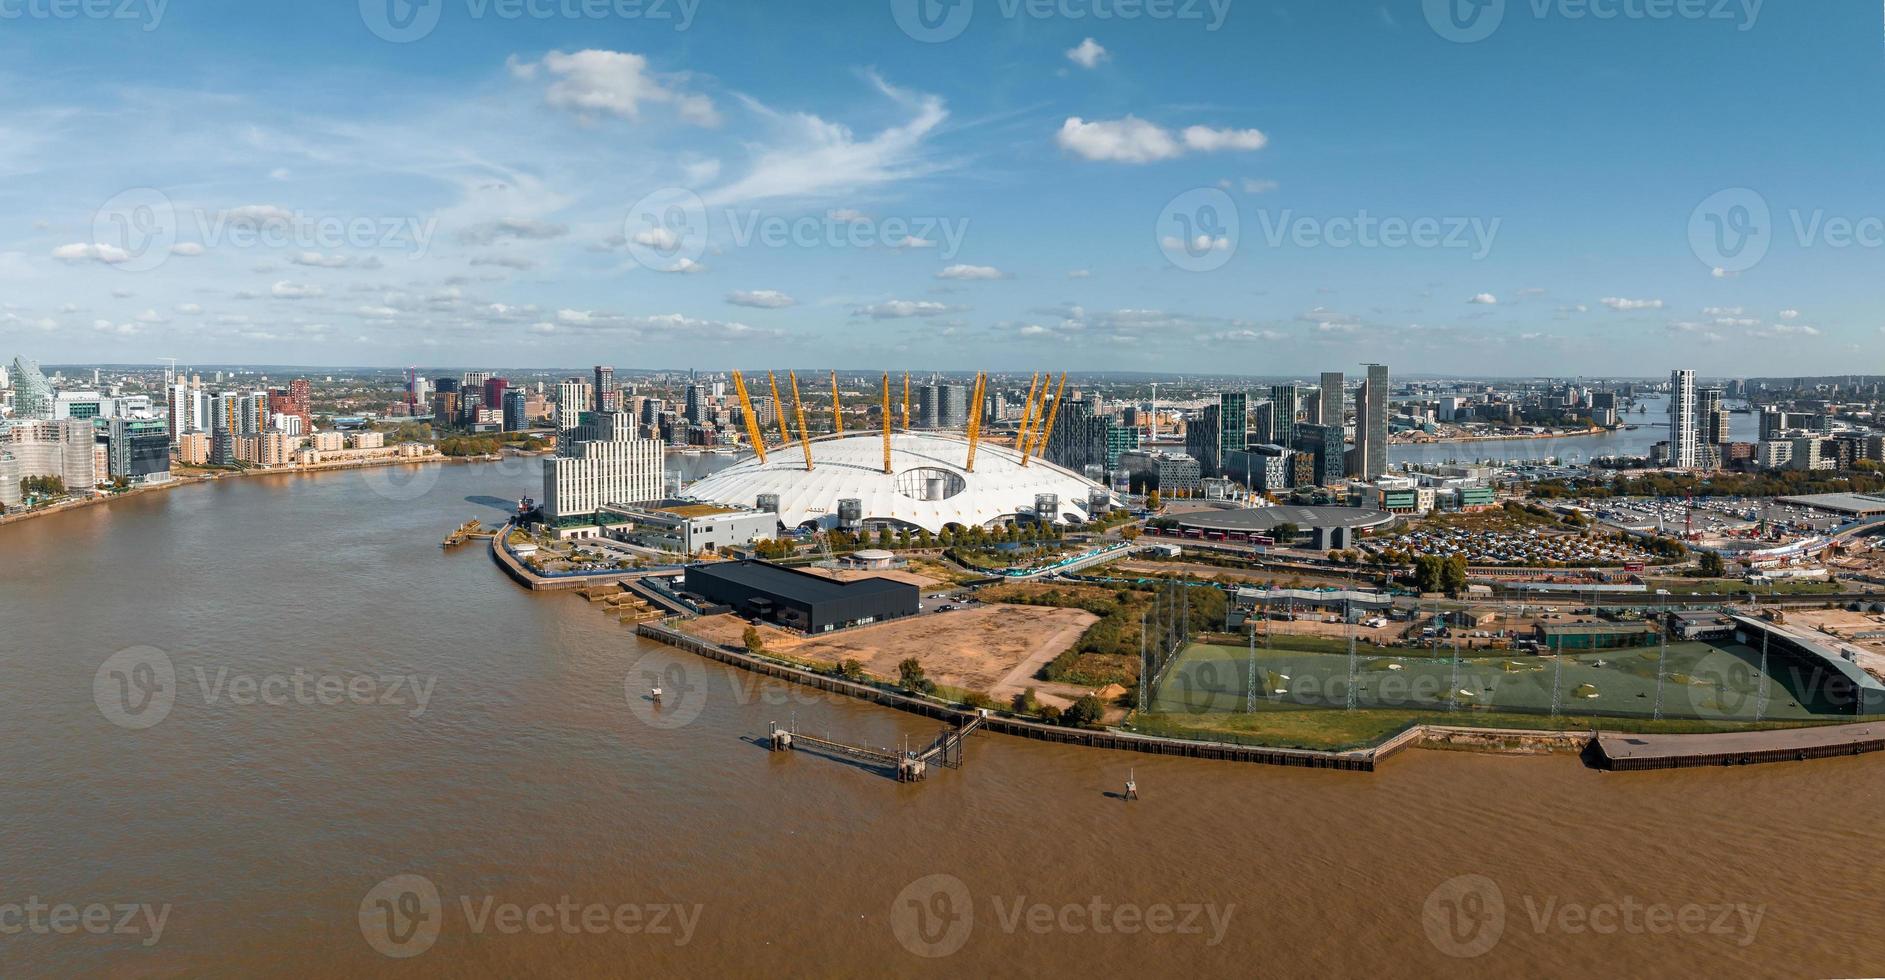 aereo Visualizza di il millennio cupola nel Londra. foto